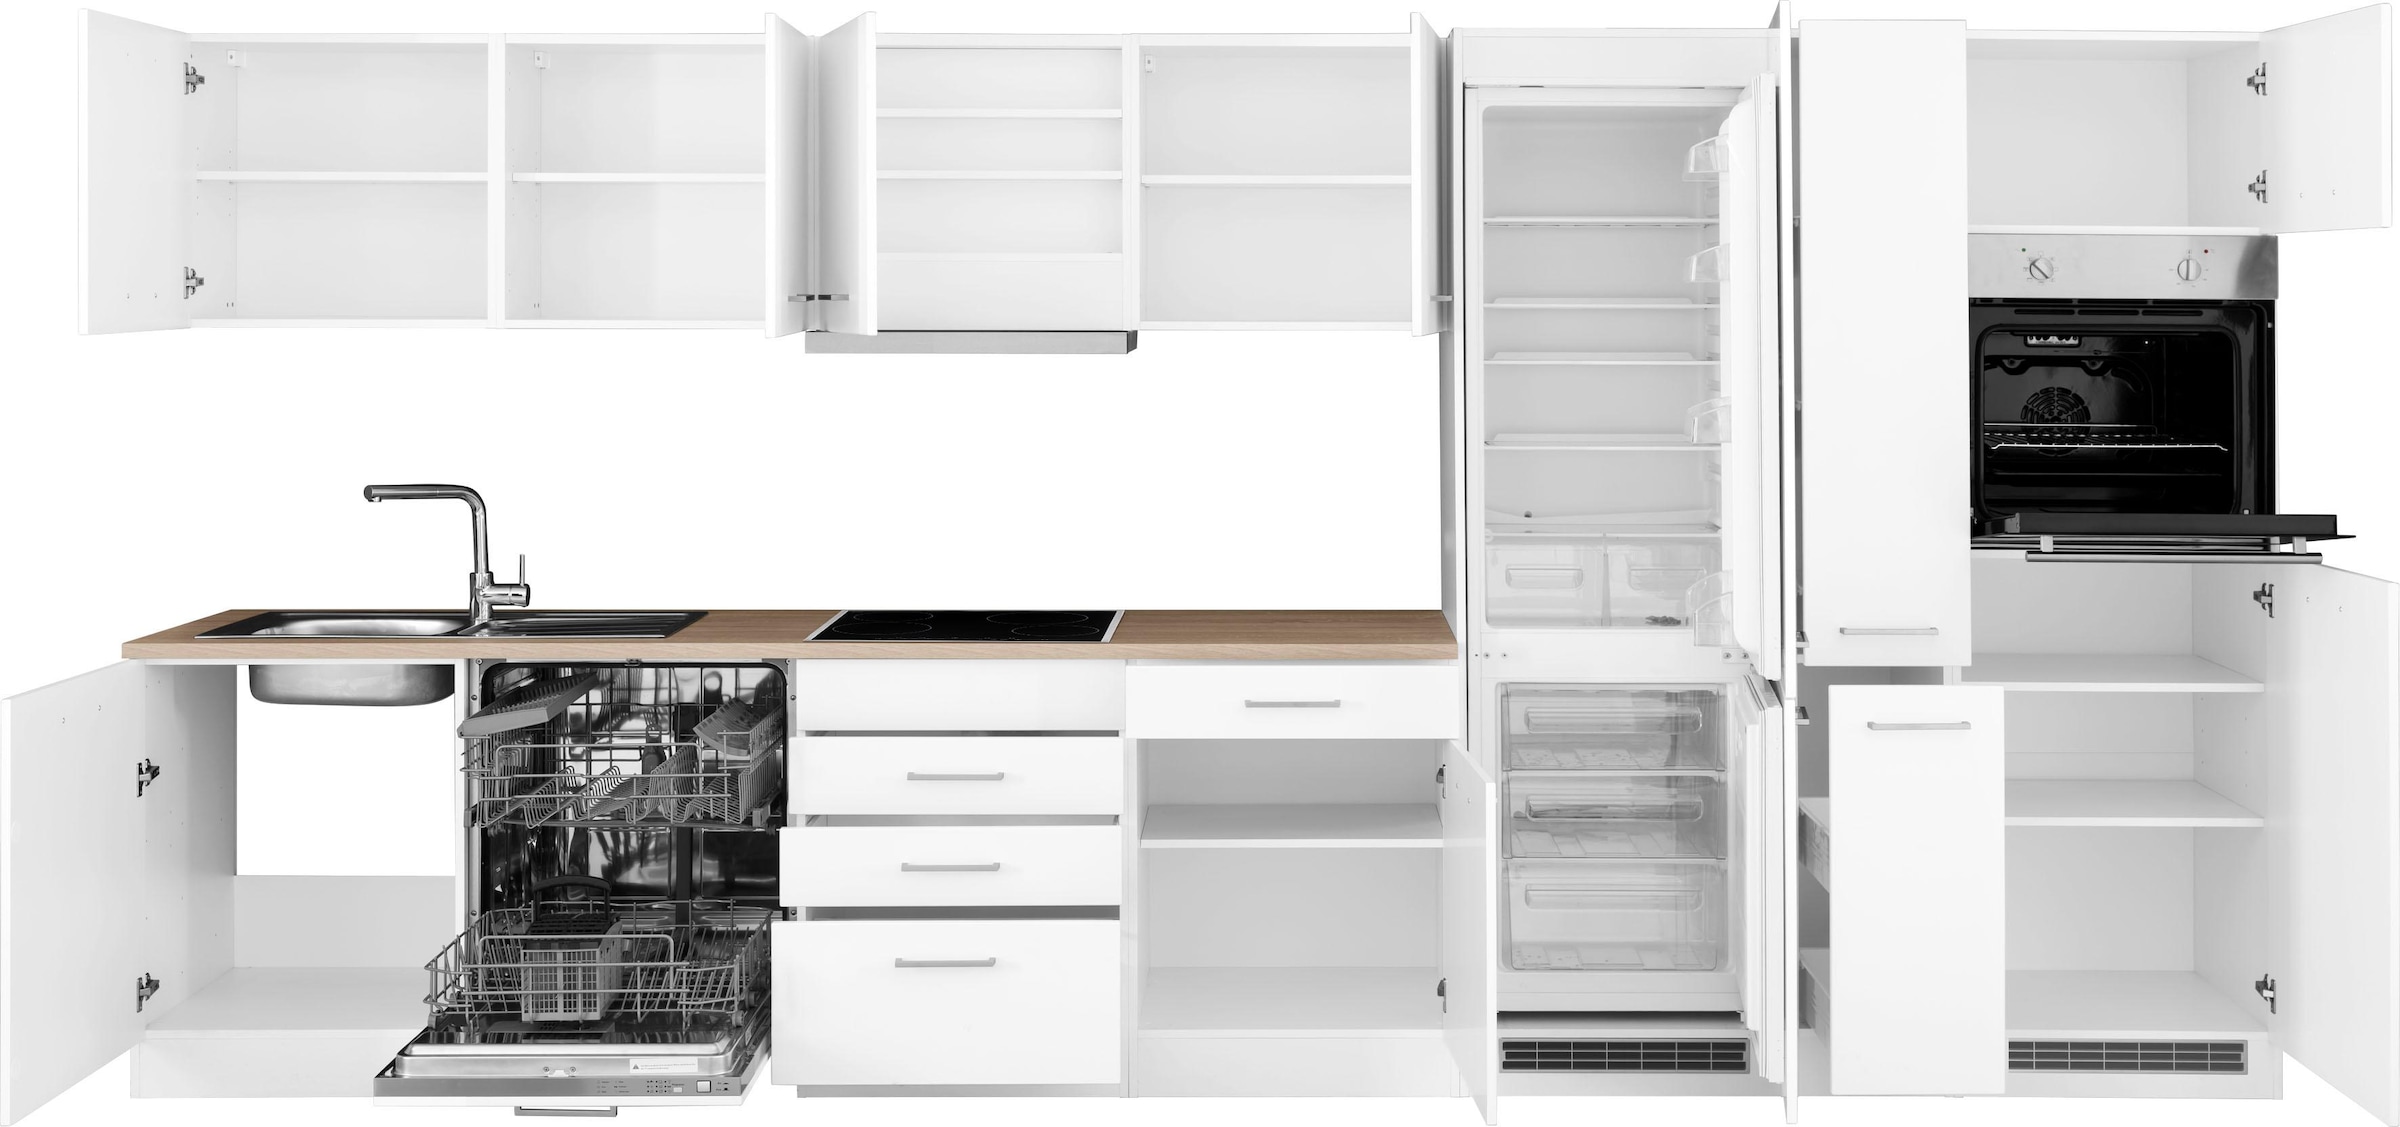 HELD MÖBEL Küchenzeile »Visby«, mit E-Geräte, 390 cm, inkl. Kühl/Gefrierkombination und Geschirrspüler